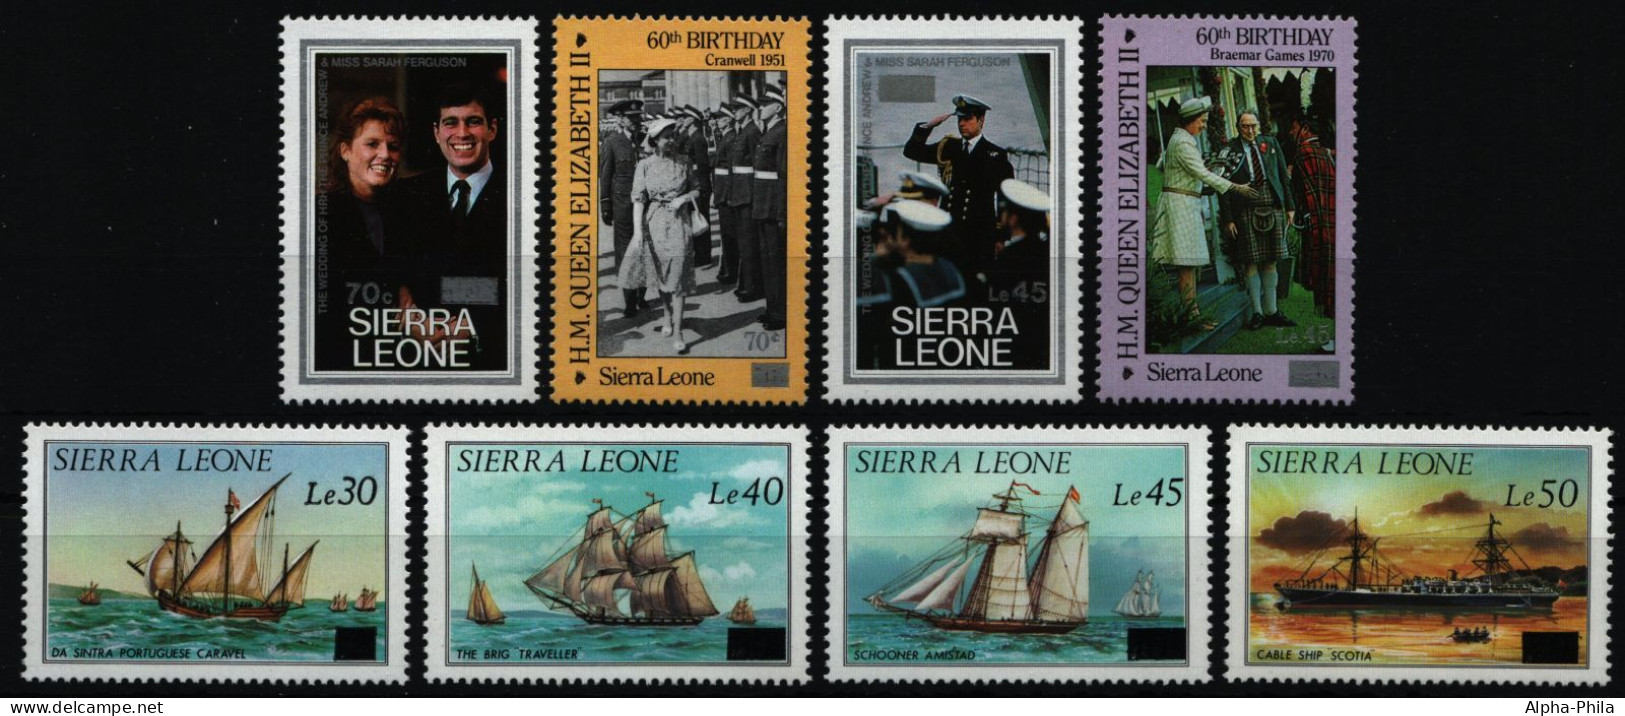 Sierra Leone 1986 - Mi-Nr. 916-923 ** - MNH - Freimarken / Definitives - Sierra Leone (1961-...)